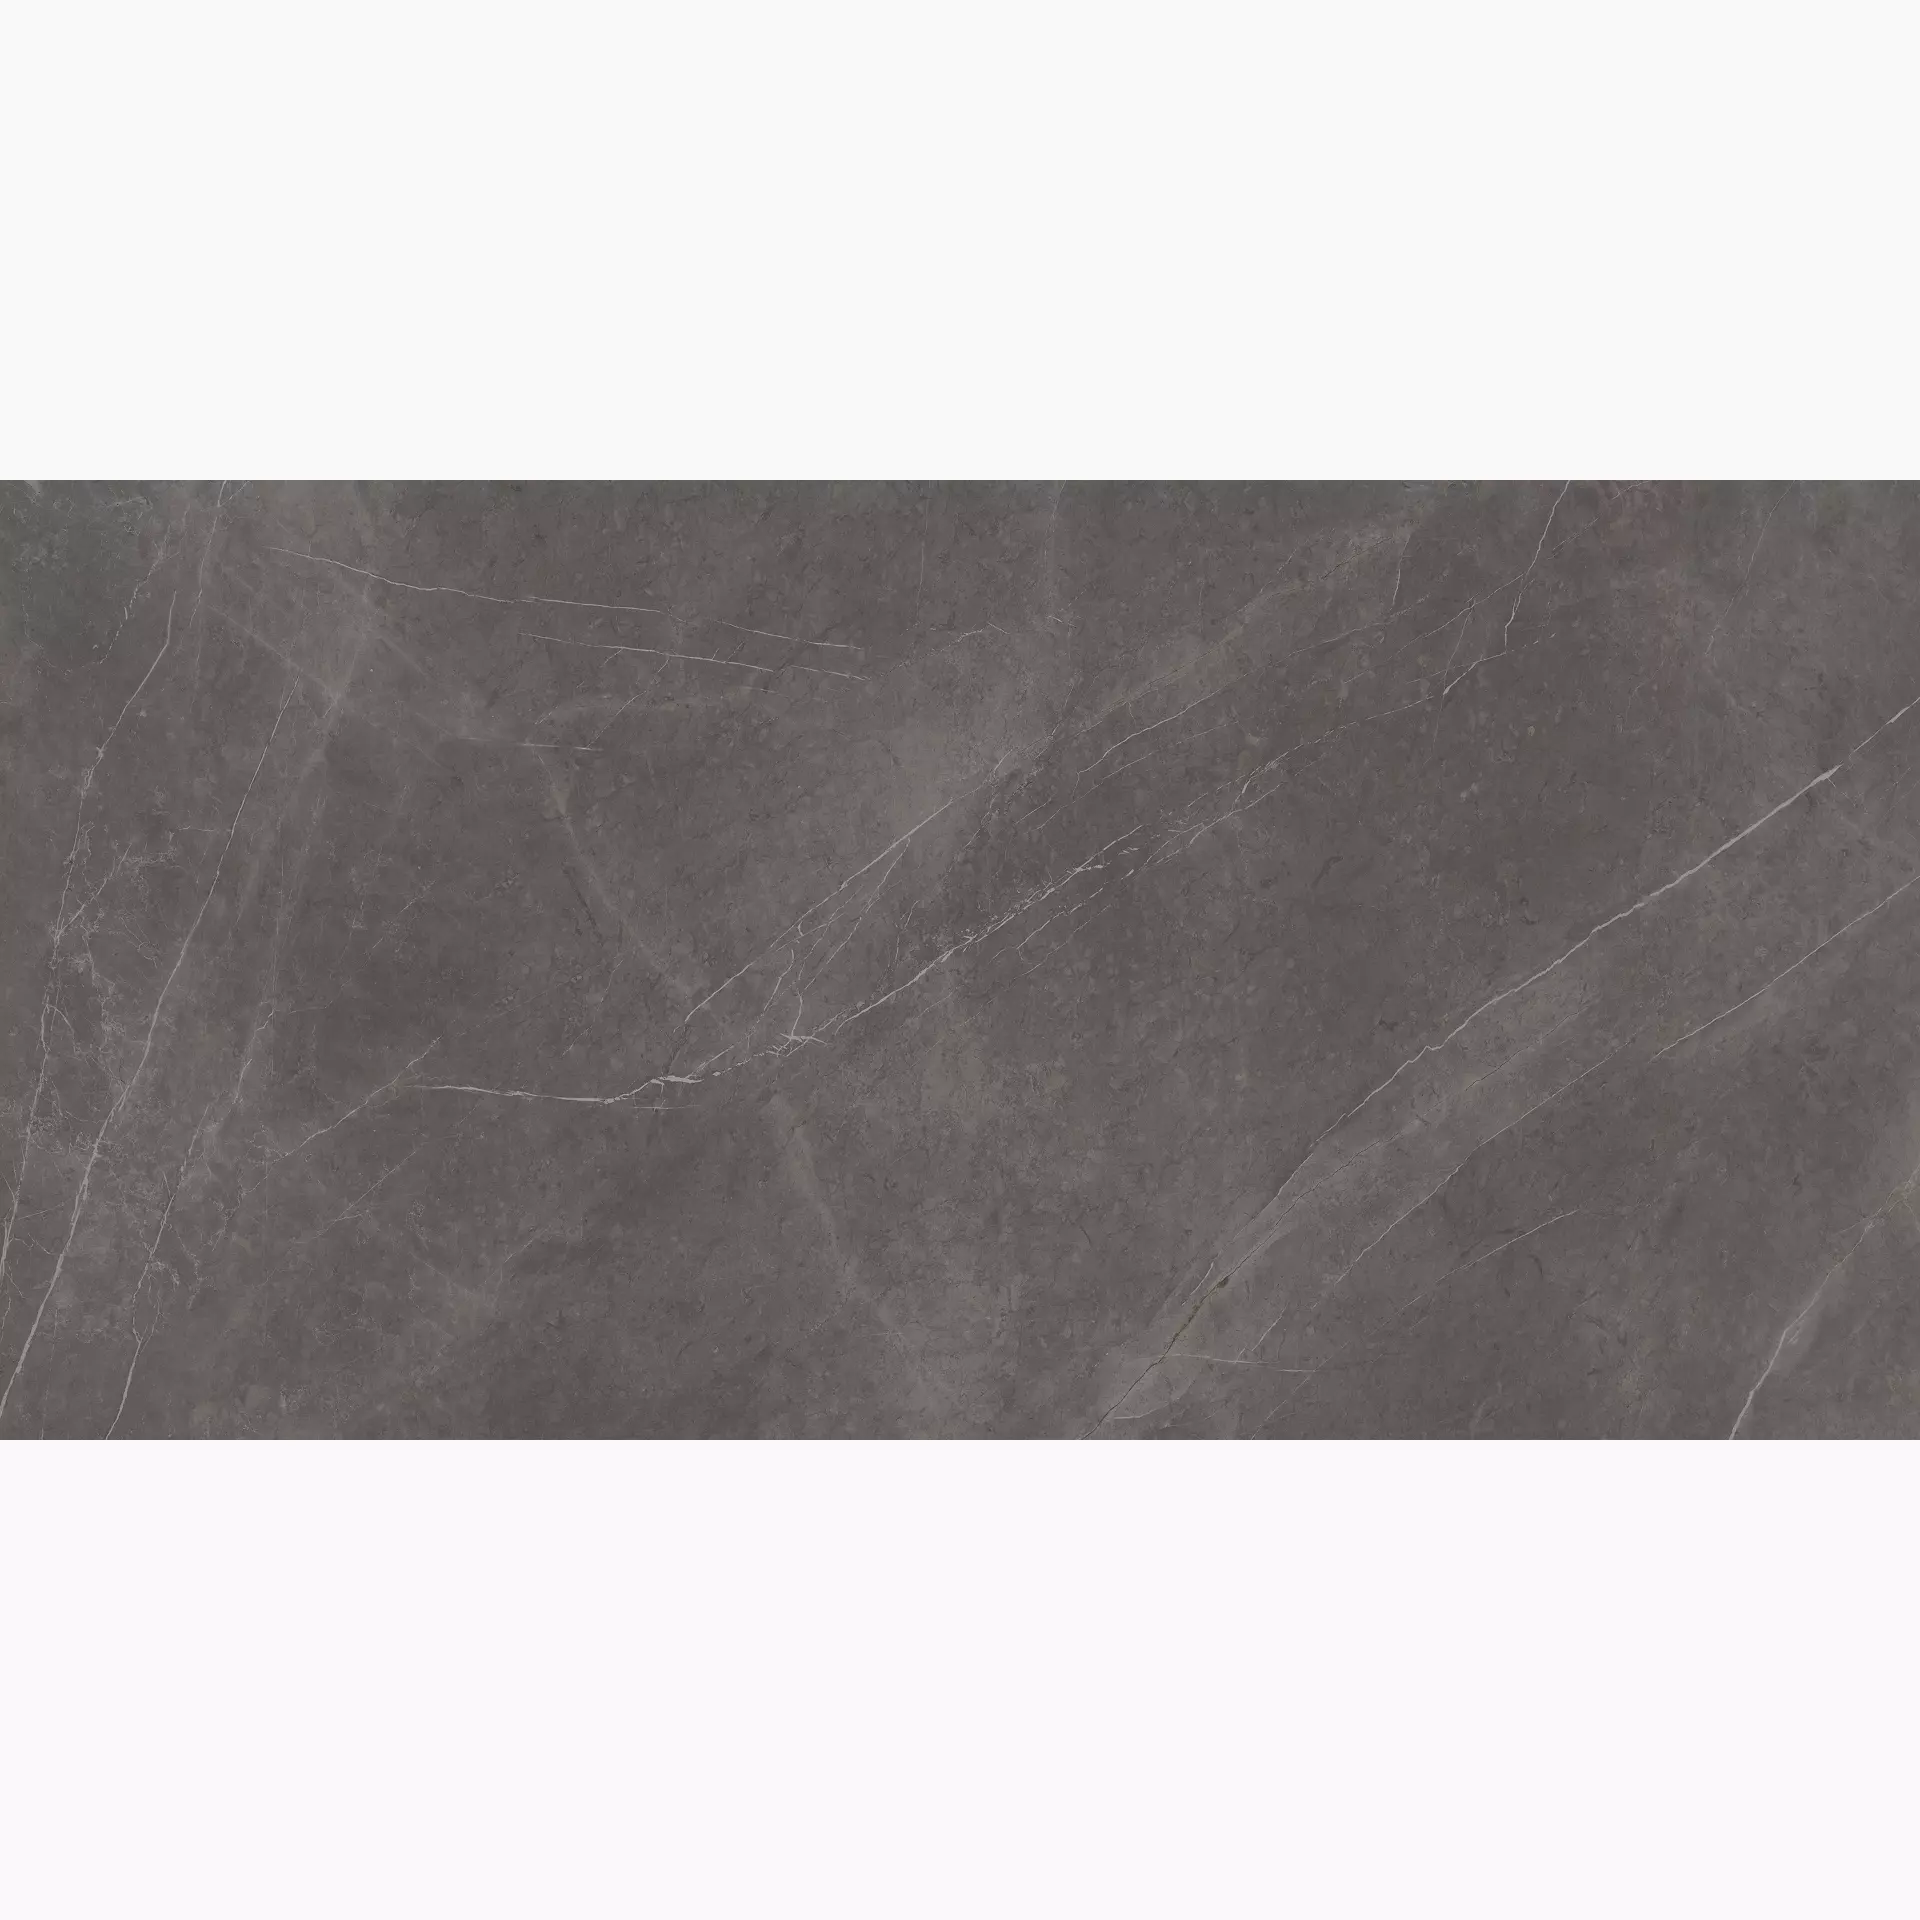 Ariostea Ultra Marmi Grey Marble Lucidato Shiny Grey Marble UM6L300524 glaenzend poliert 150x300cm rektifiziert 6mm